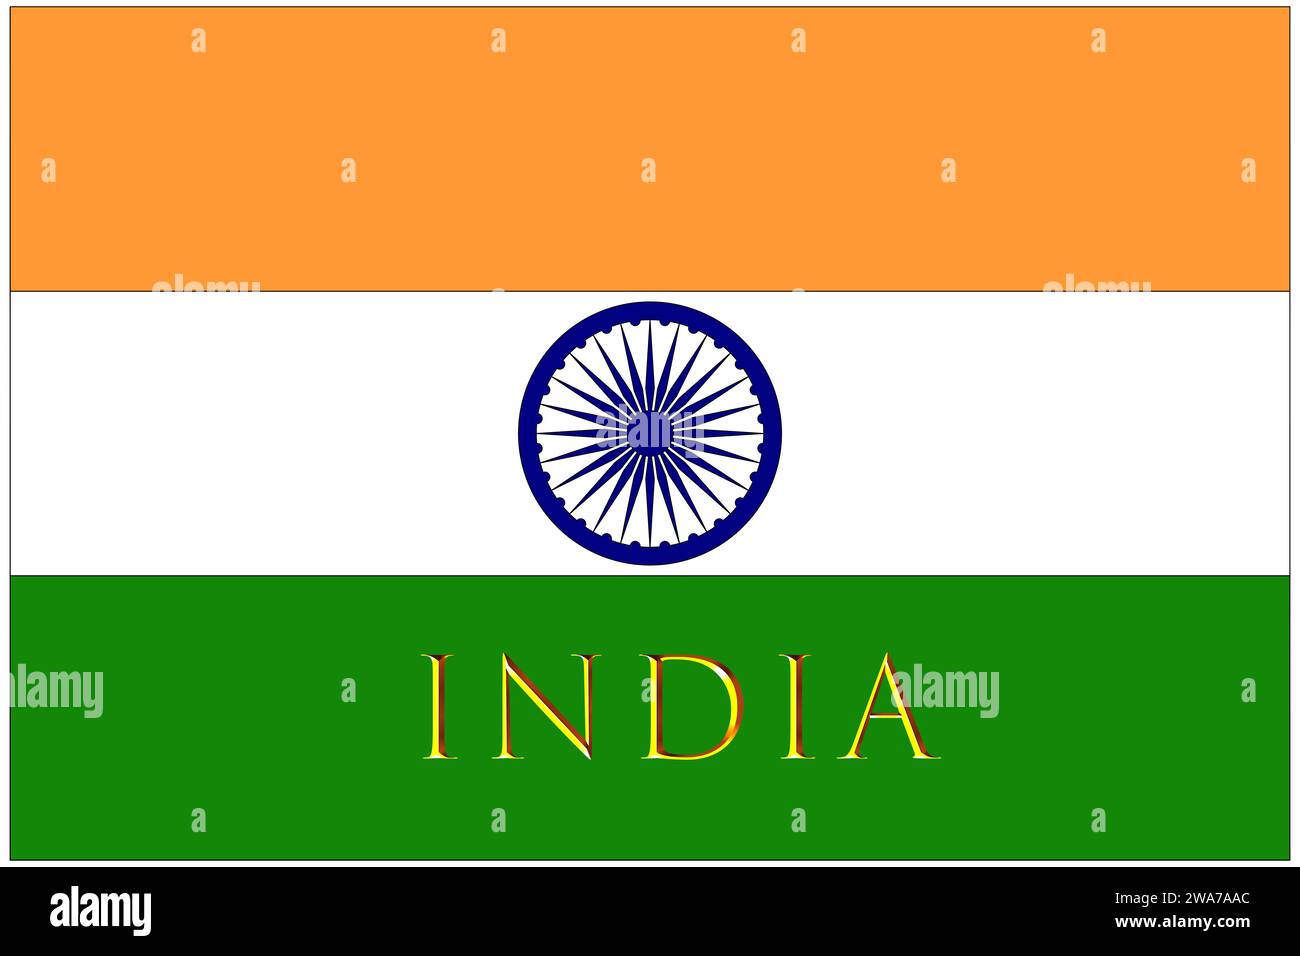 inde, drapeau indien avec le nom de la nation inde dorée, le drapeau avec les proportions et les couleurs correctes officielles. Banque D'Images